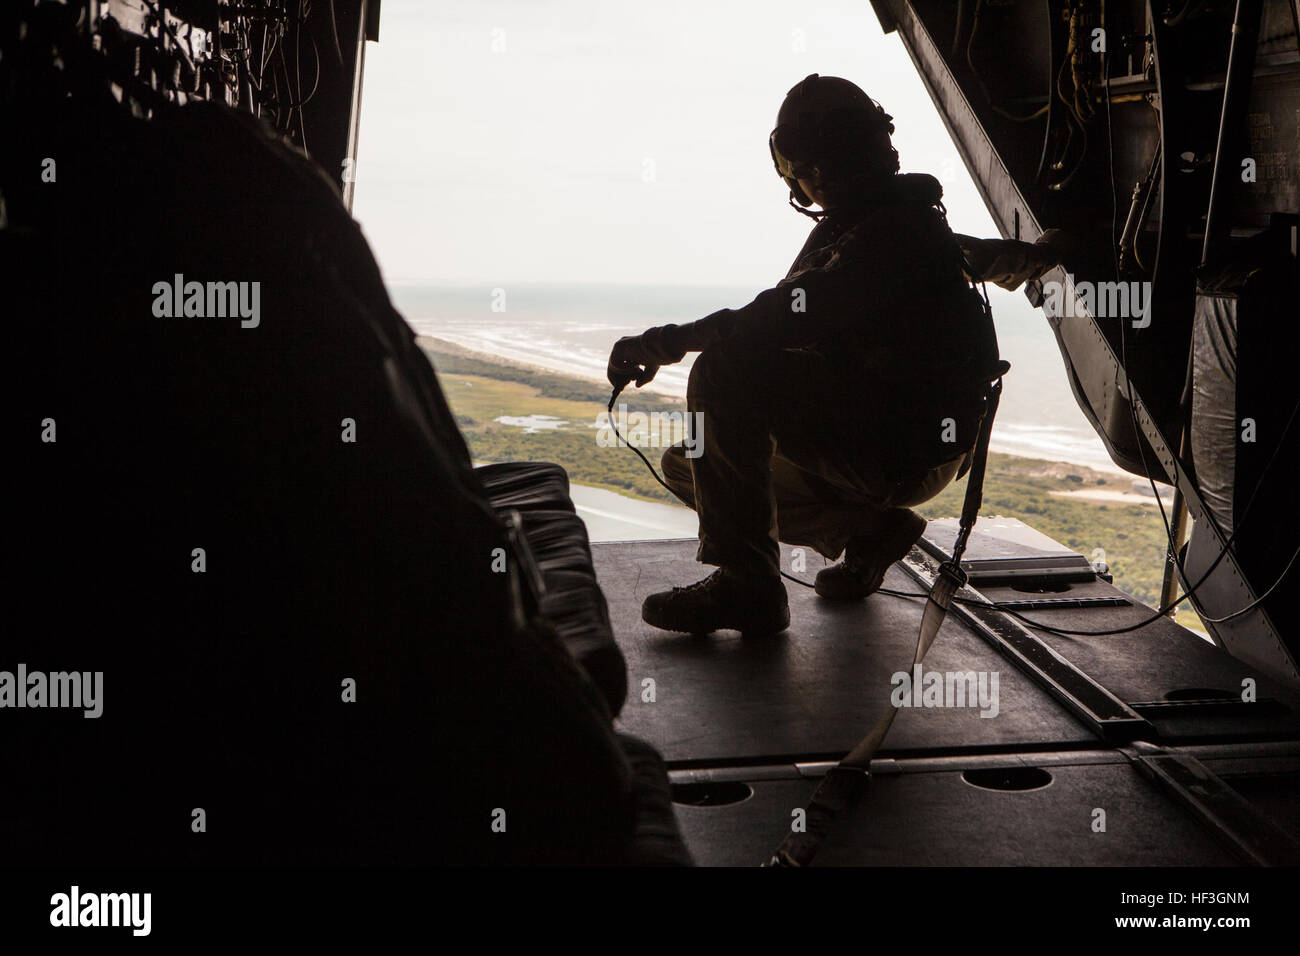 Stati Uniti Marine Corps Lance Cpl. Miguel C. Flores, una MV-22 Osprey capo equipaggio, 2 aeromobili Marina Wing, relè informazioni al resto del personale navigante su un volo tenendo il Giappone Admiral Katsutoshi Kawano, Capo del personale, di nuovo River Air Base nei pressi di Camp Lejeune, N.C., 15 luglio, 2015. Lo scopo della visita era quello di dimostrare il Dipartimento della Difesa il supporto per il Giappone gli sforzi per potenziare le capacità del Giappone Forze di autodifesa per distribuire rapidamente aria e capacità anfibie e impiegare la dottrina comune. (U.S. Marine Corps photo by Lance Cpl. Sarah Blendowski, 2d Divisione Marine, combattere la camma Foto Stock